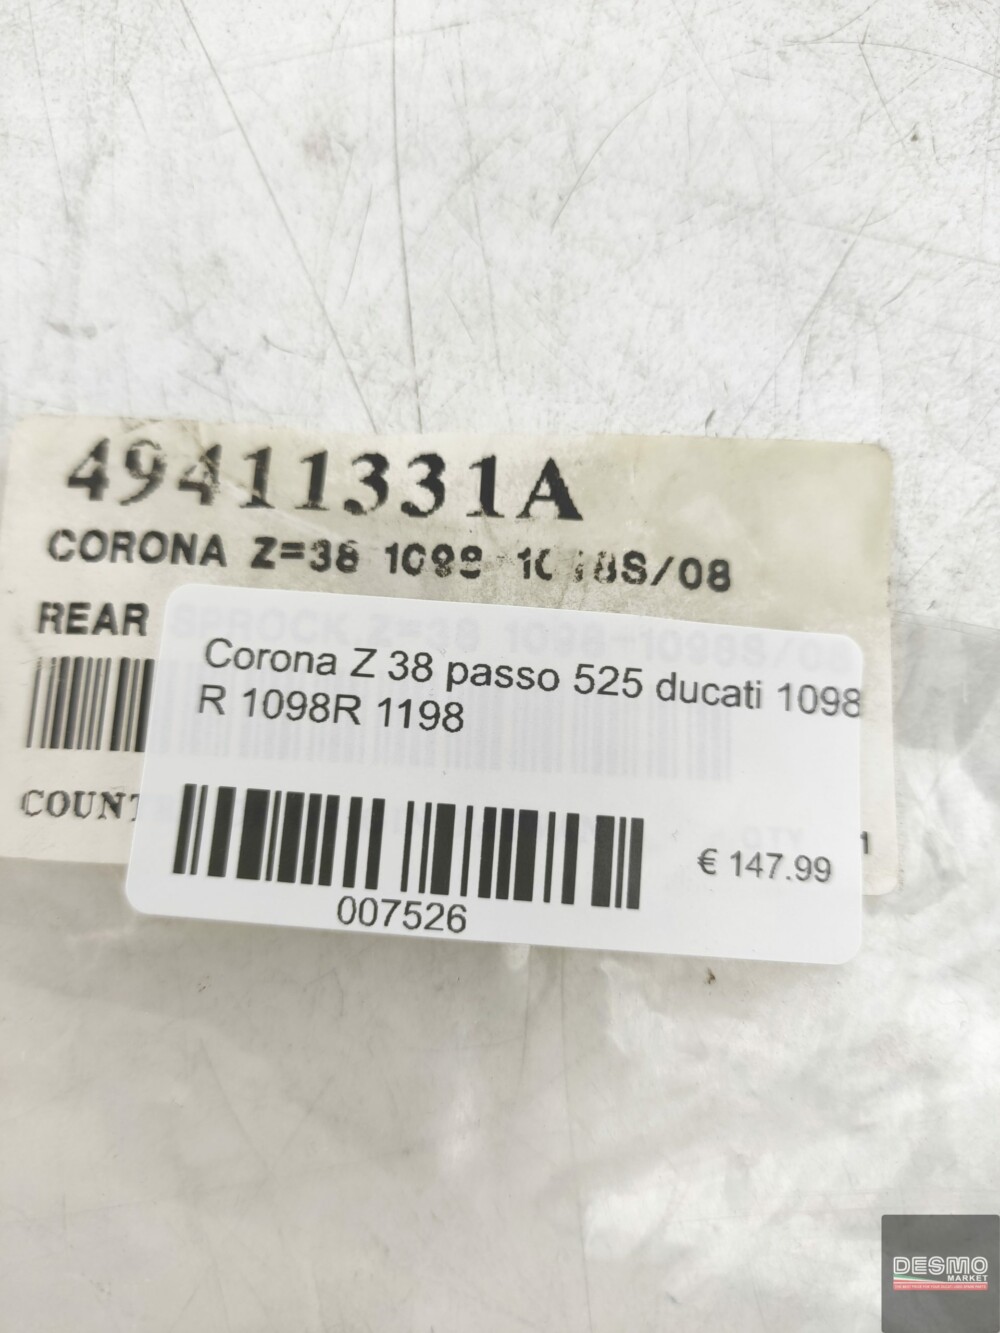 Corona Z 38 passo 525 ducati 1098 R 1098R 1198